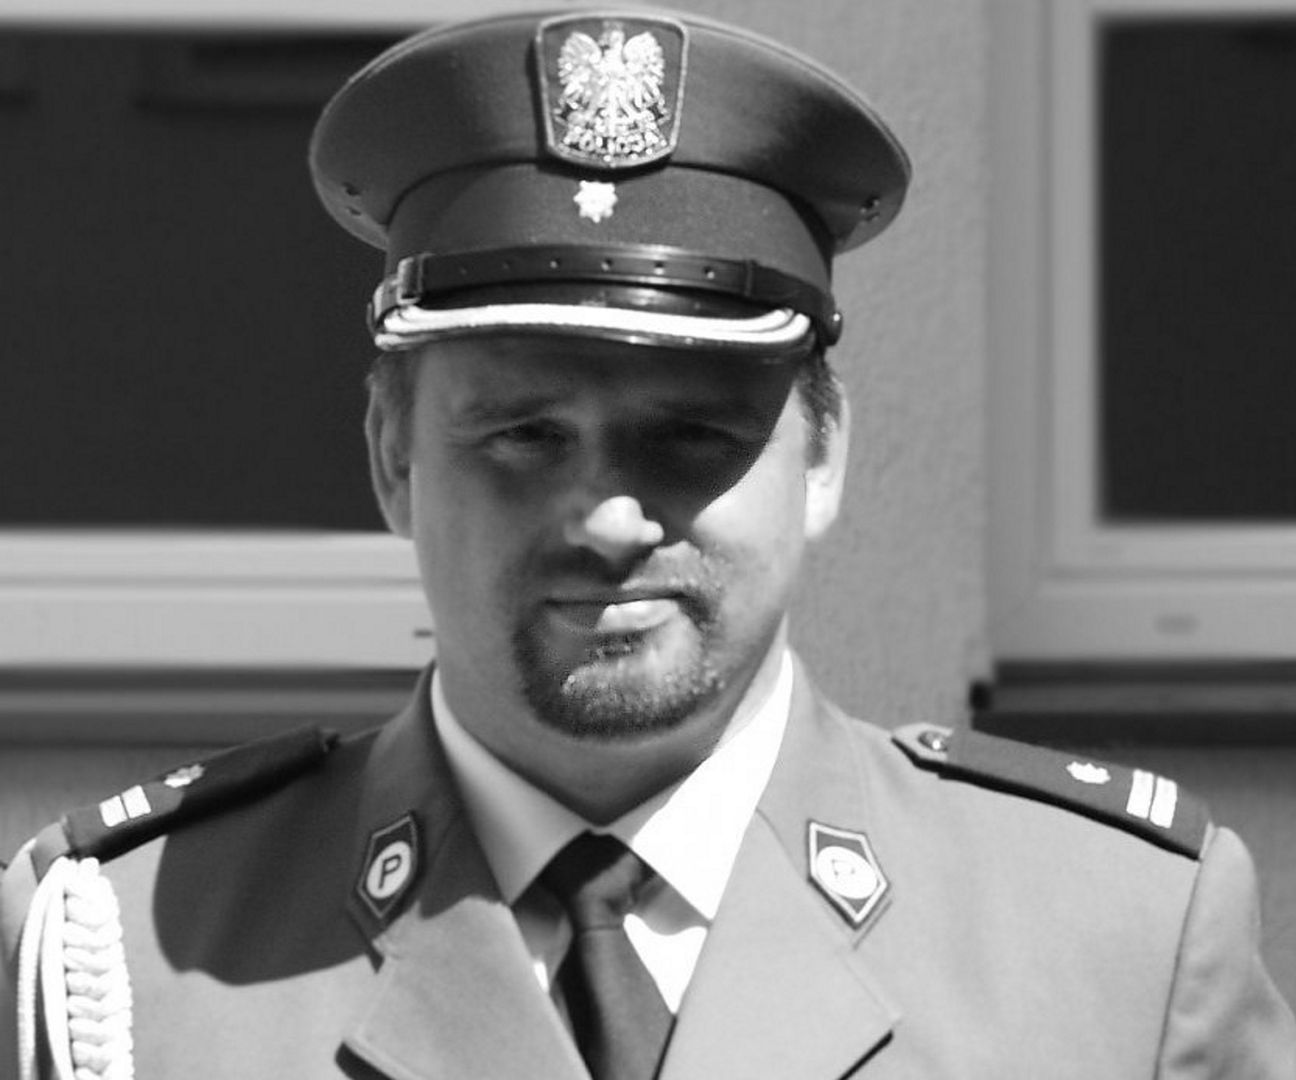 Nie żyje policjant z Węgorzewa. Bogdan Kieżun miał 48 lat